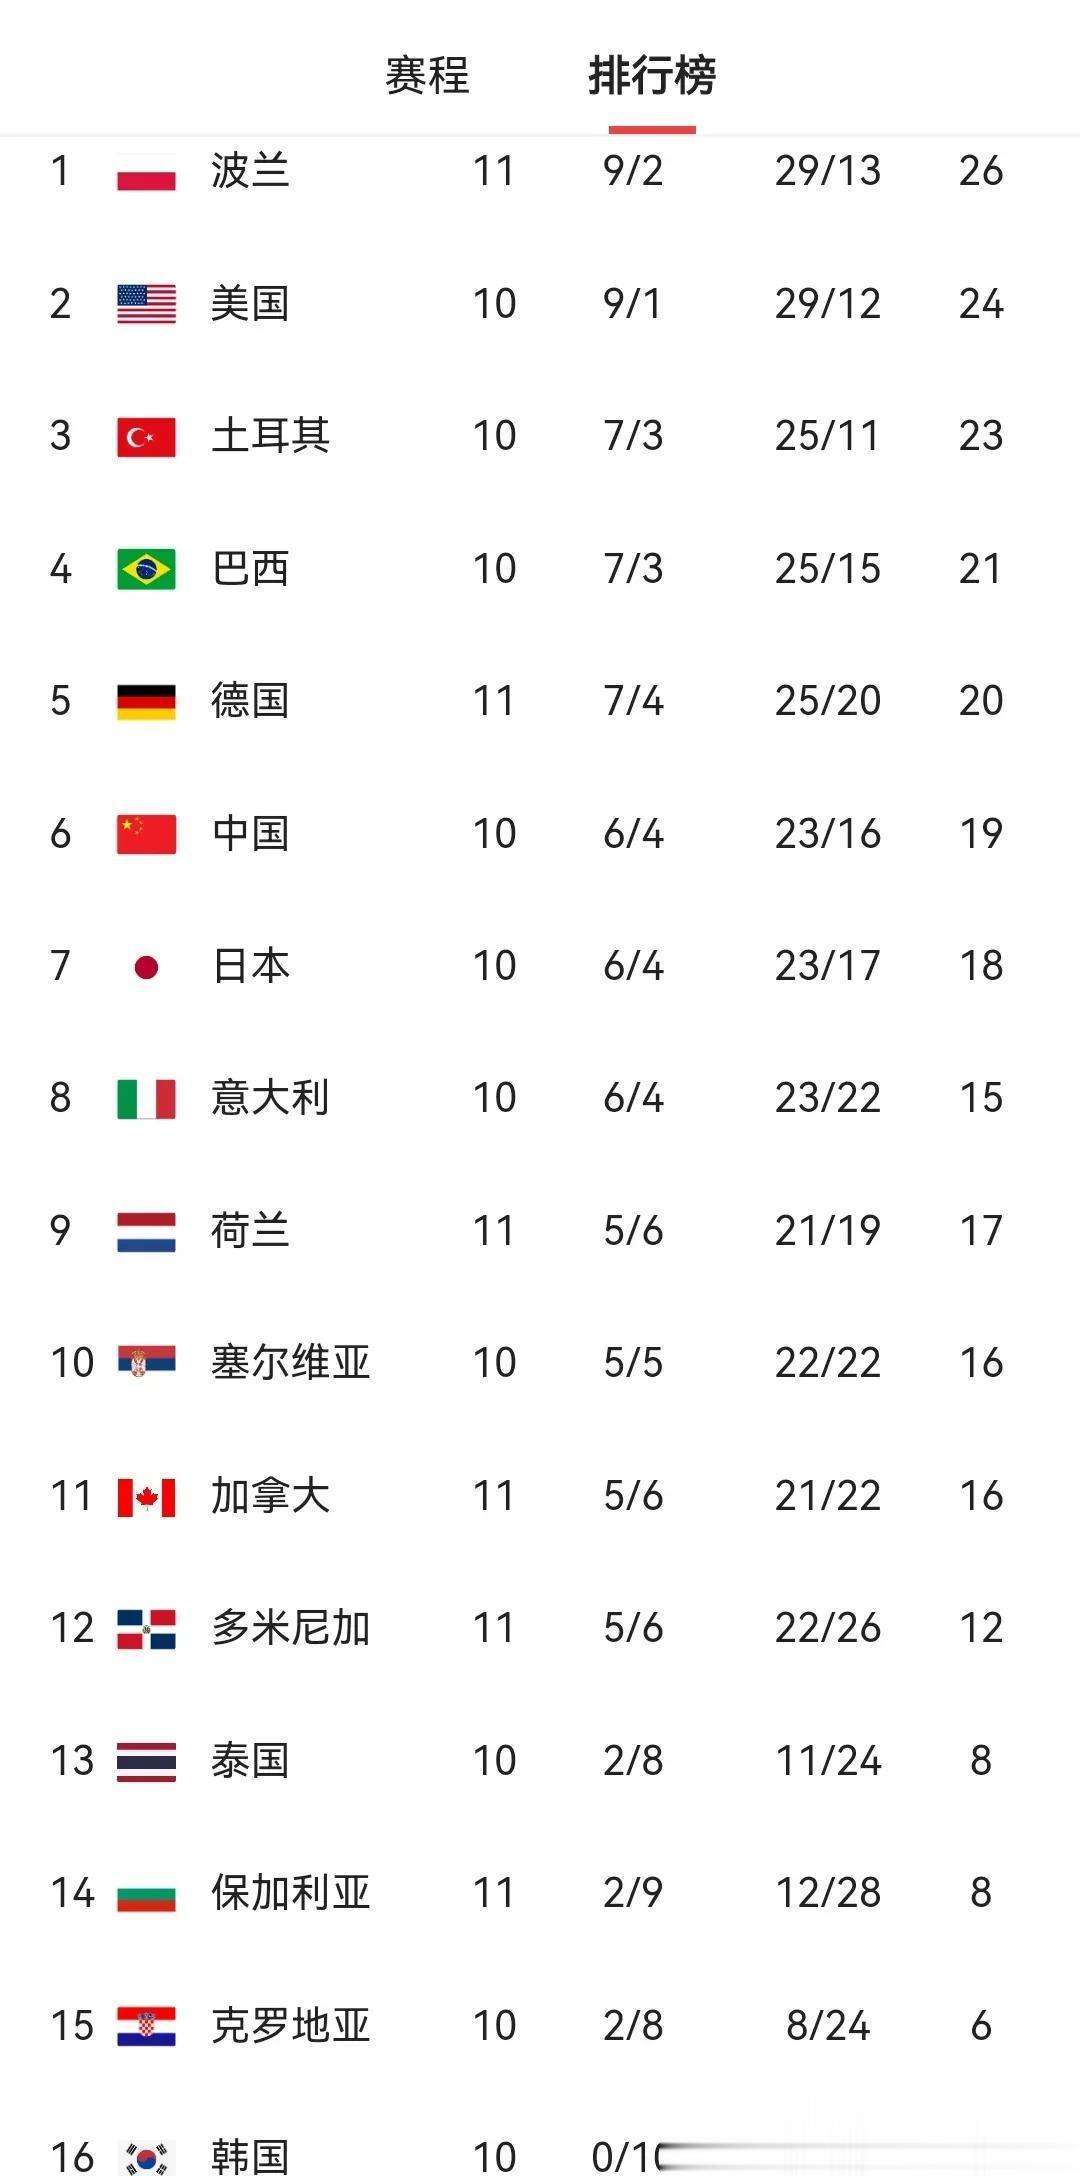 世界女排联赛积分榜最新变化
中国女排遭多米尼加逆转四连败
蔡斌的临场调度指挥真是